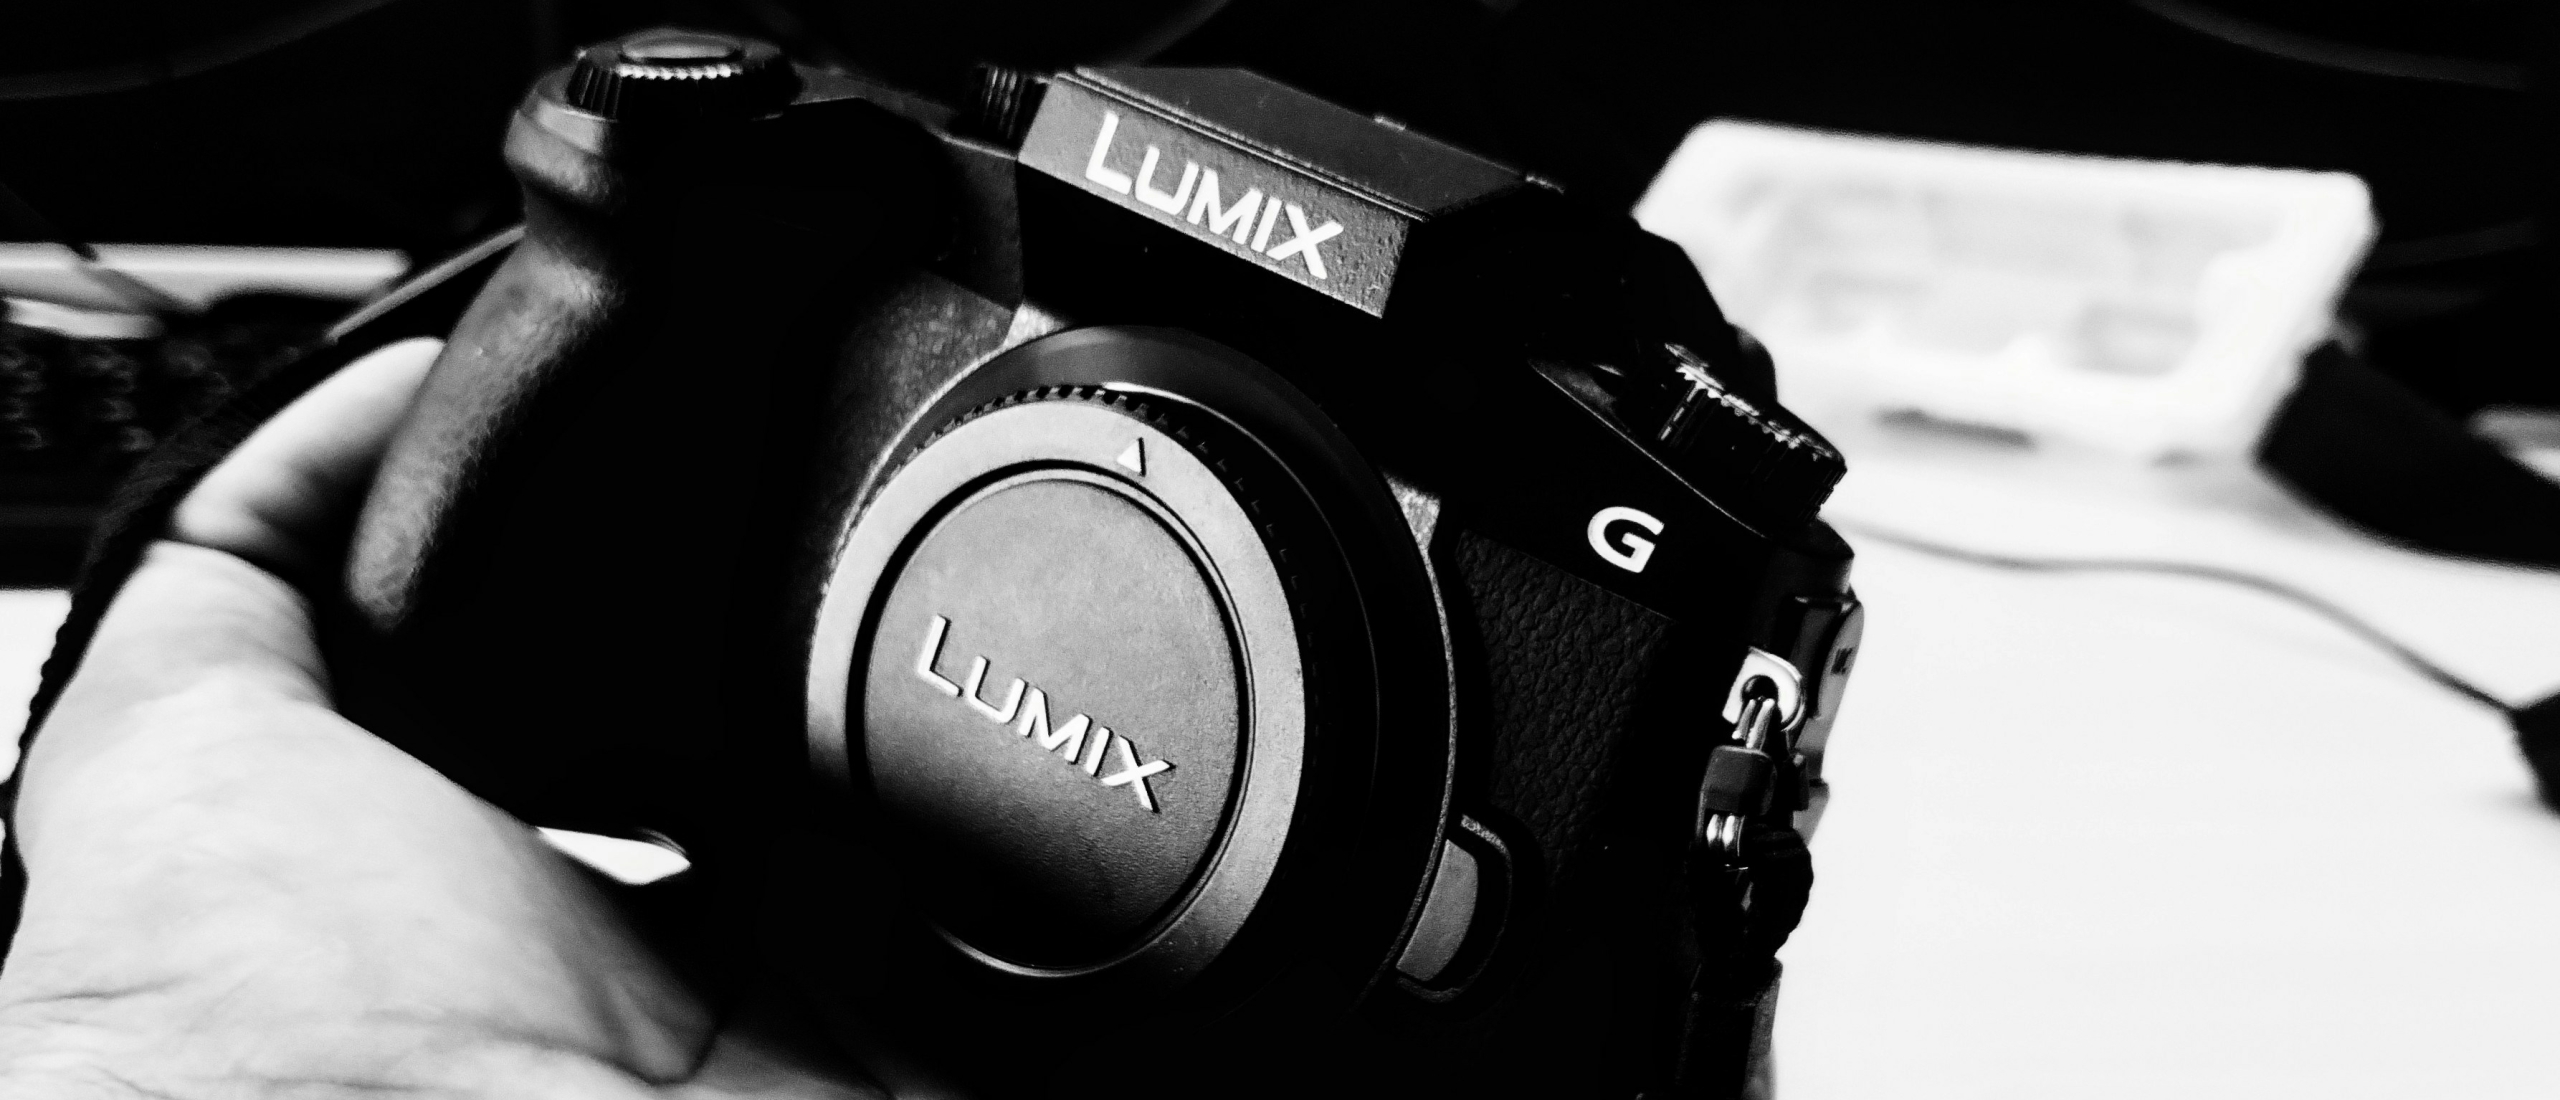 De Panasonic Lumix DMC-G7: Ideaal voor beginners en gevorderden